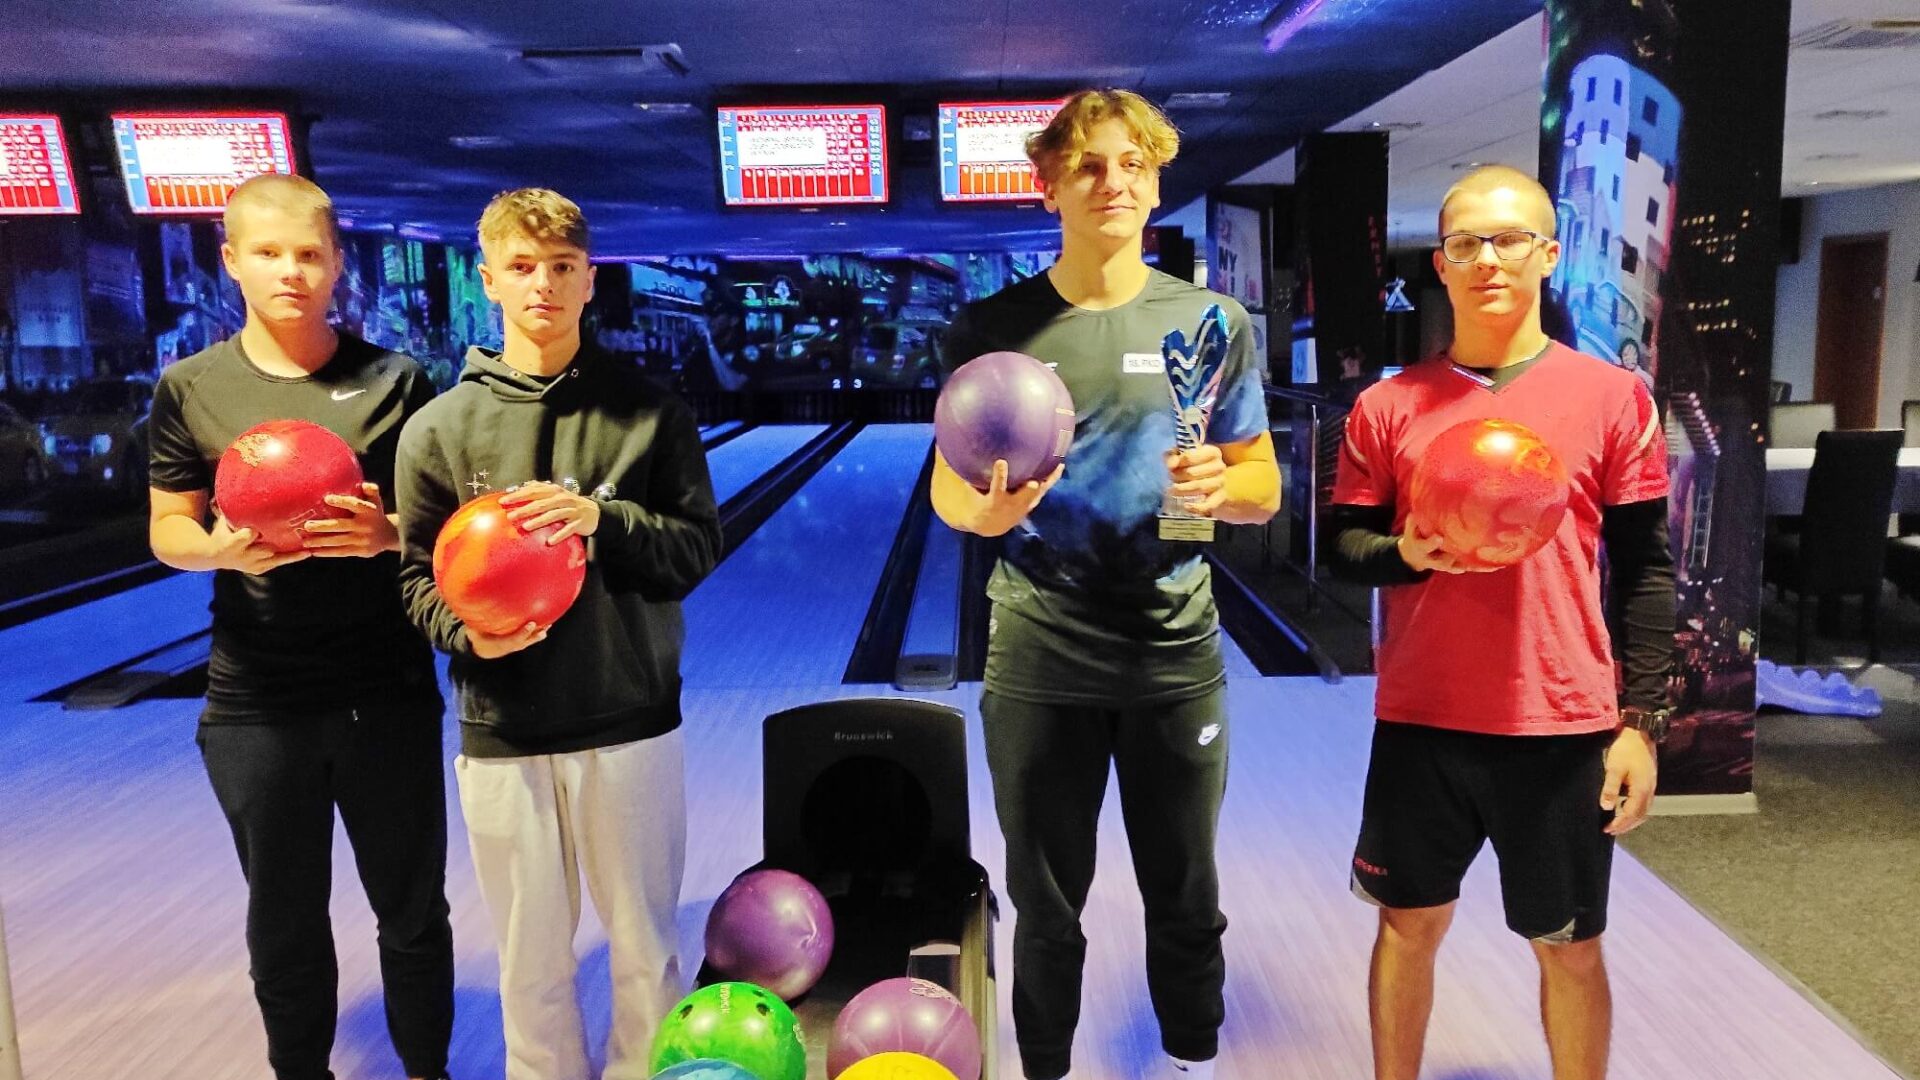 Na zdjęciu czwórka uczniów w sali bowlingowej, pozuje do zdjęcia po odebraniu nagrody za wygranie turnieju. W tle tor bowlingowy.